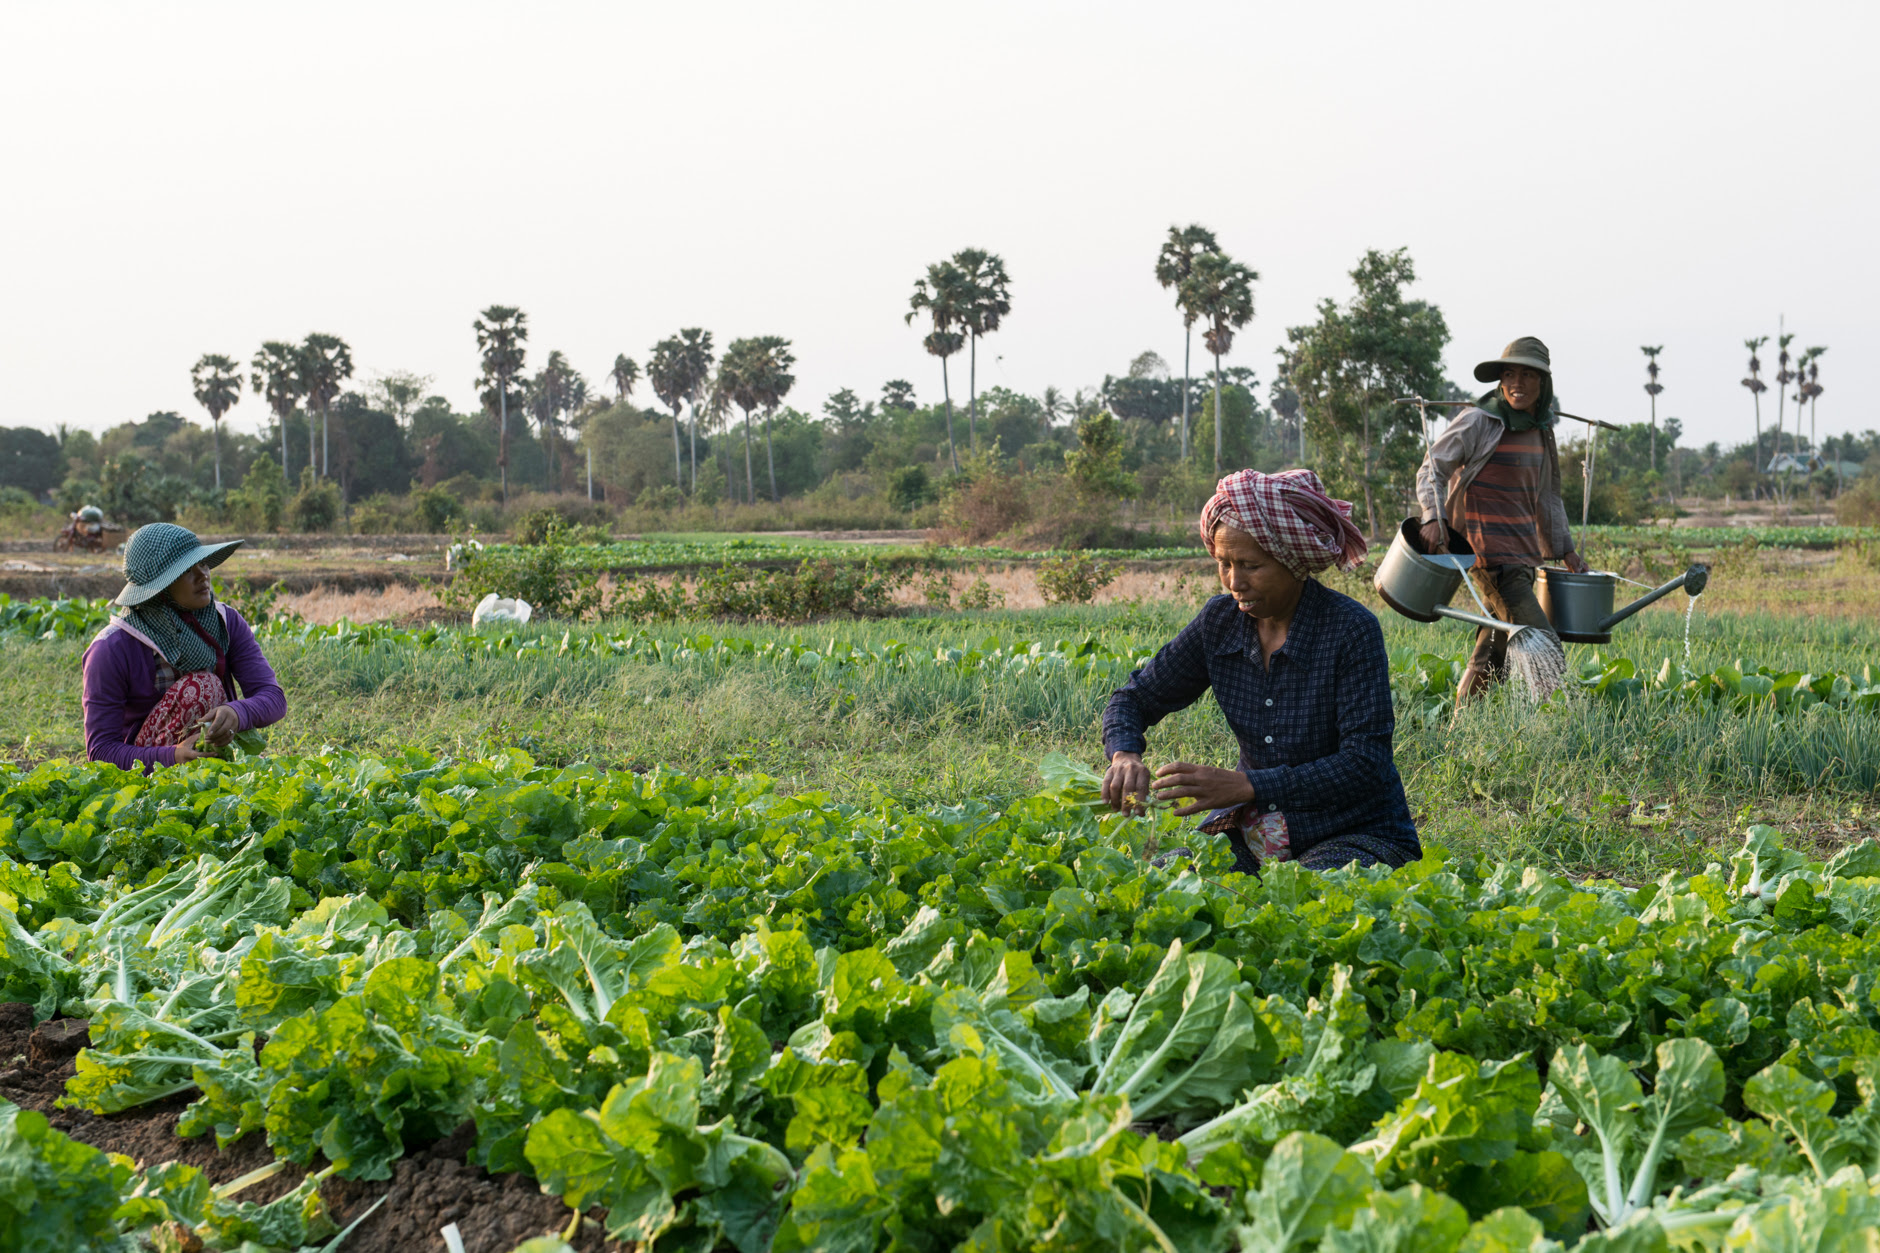 Women farmers in Cambodia